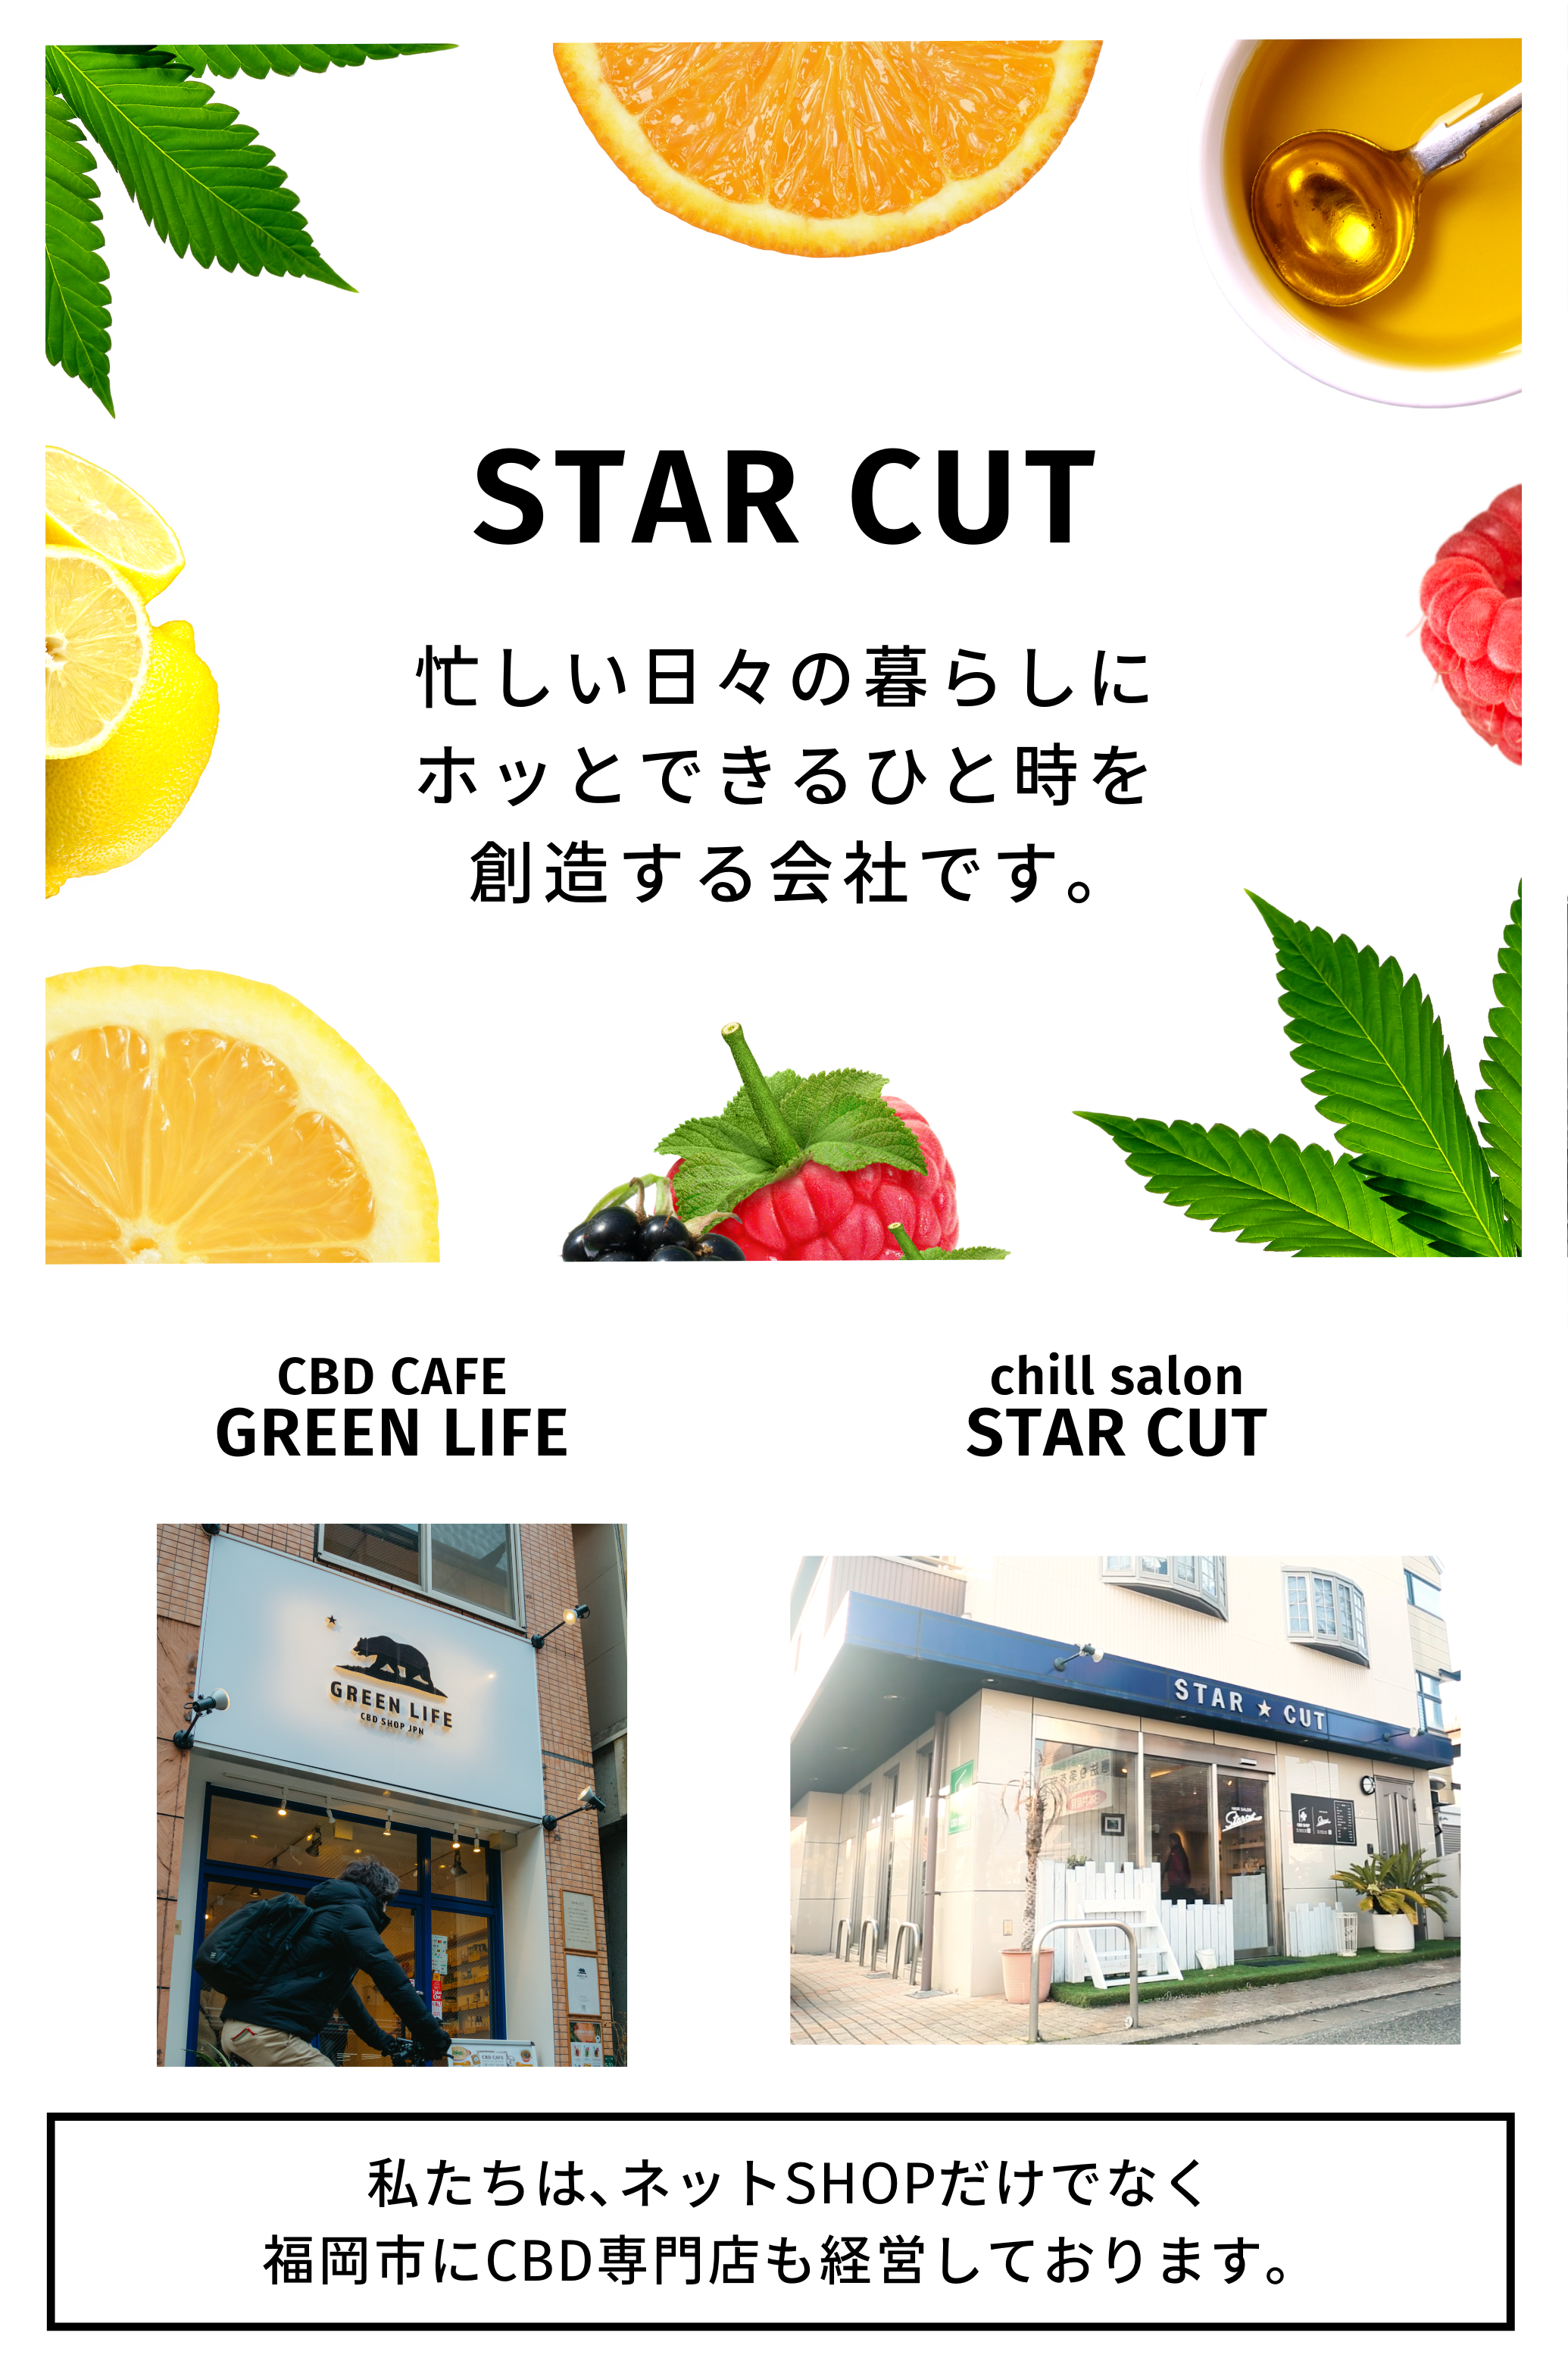 GOOD VIBES | STAR CUT | CBD・CBG・CBN 専門店